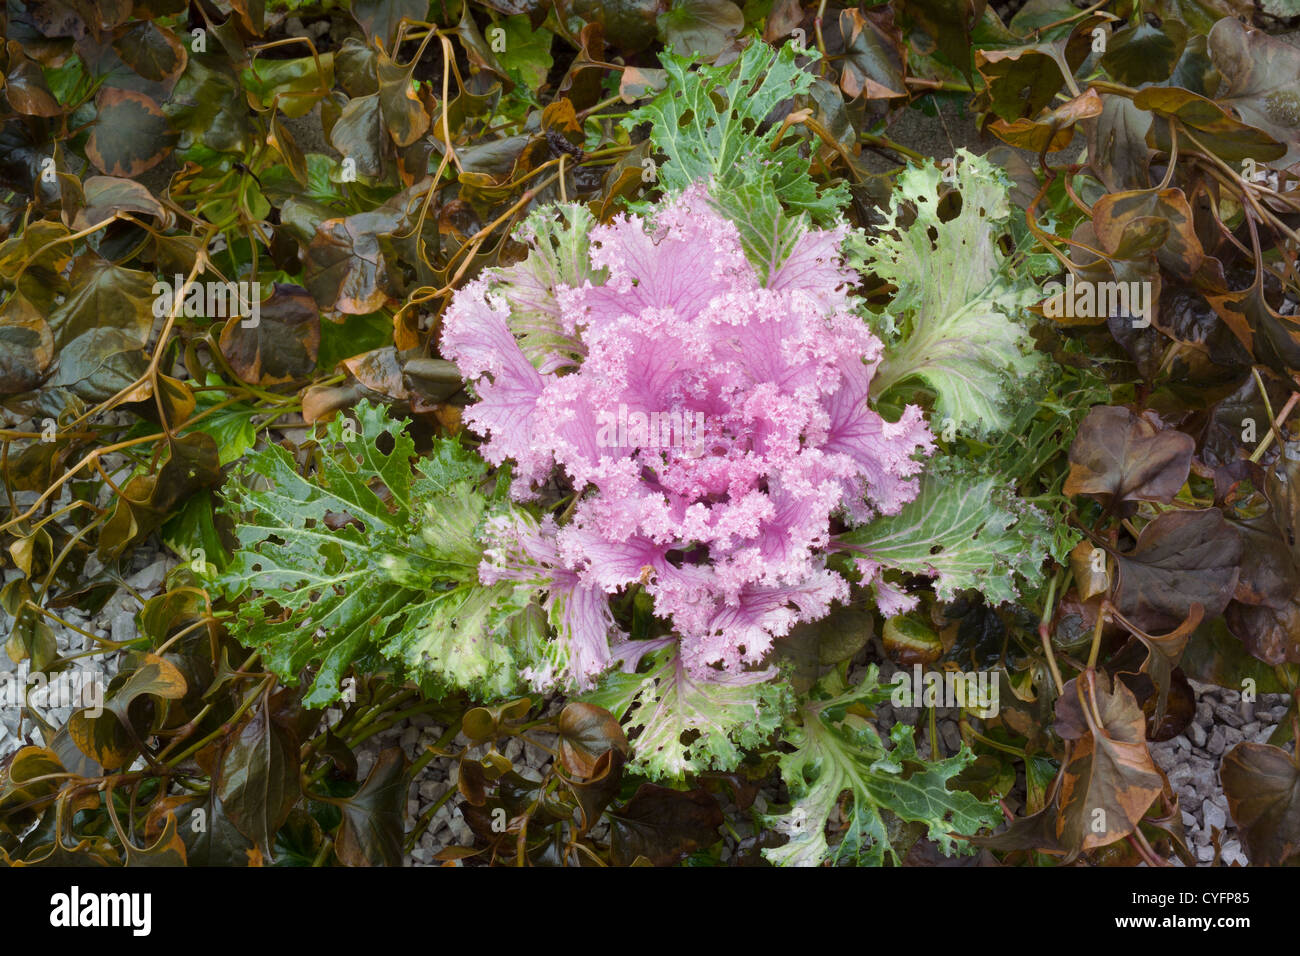 Brassica Oleracea - decorative cabbage in autumn seasonal garden Stock Photo